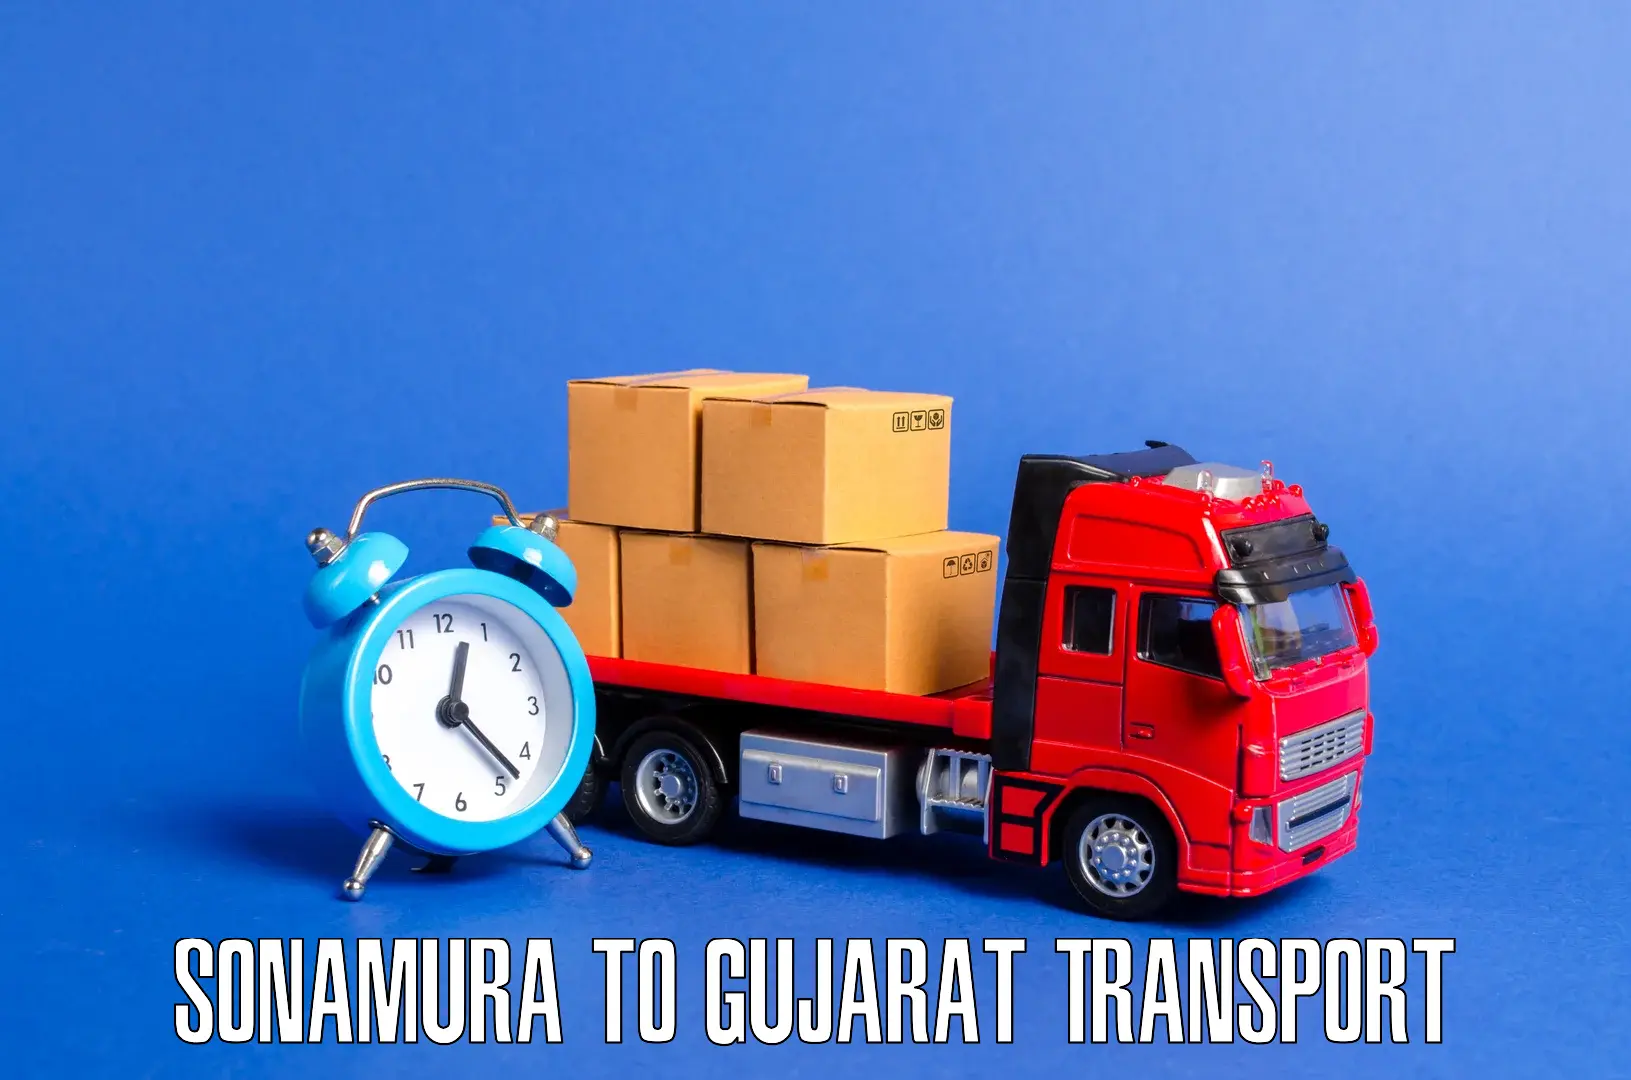 Transport in sharing Sonamura to Rajula